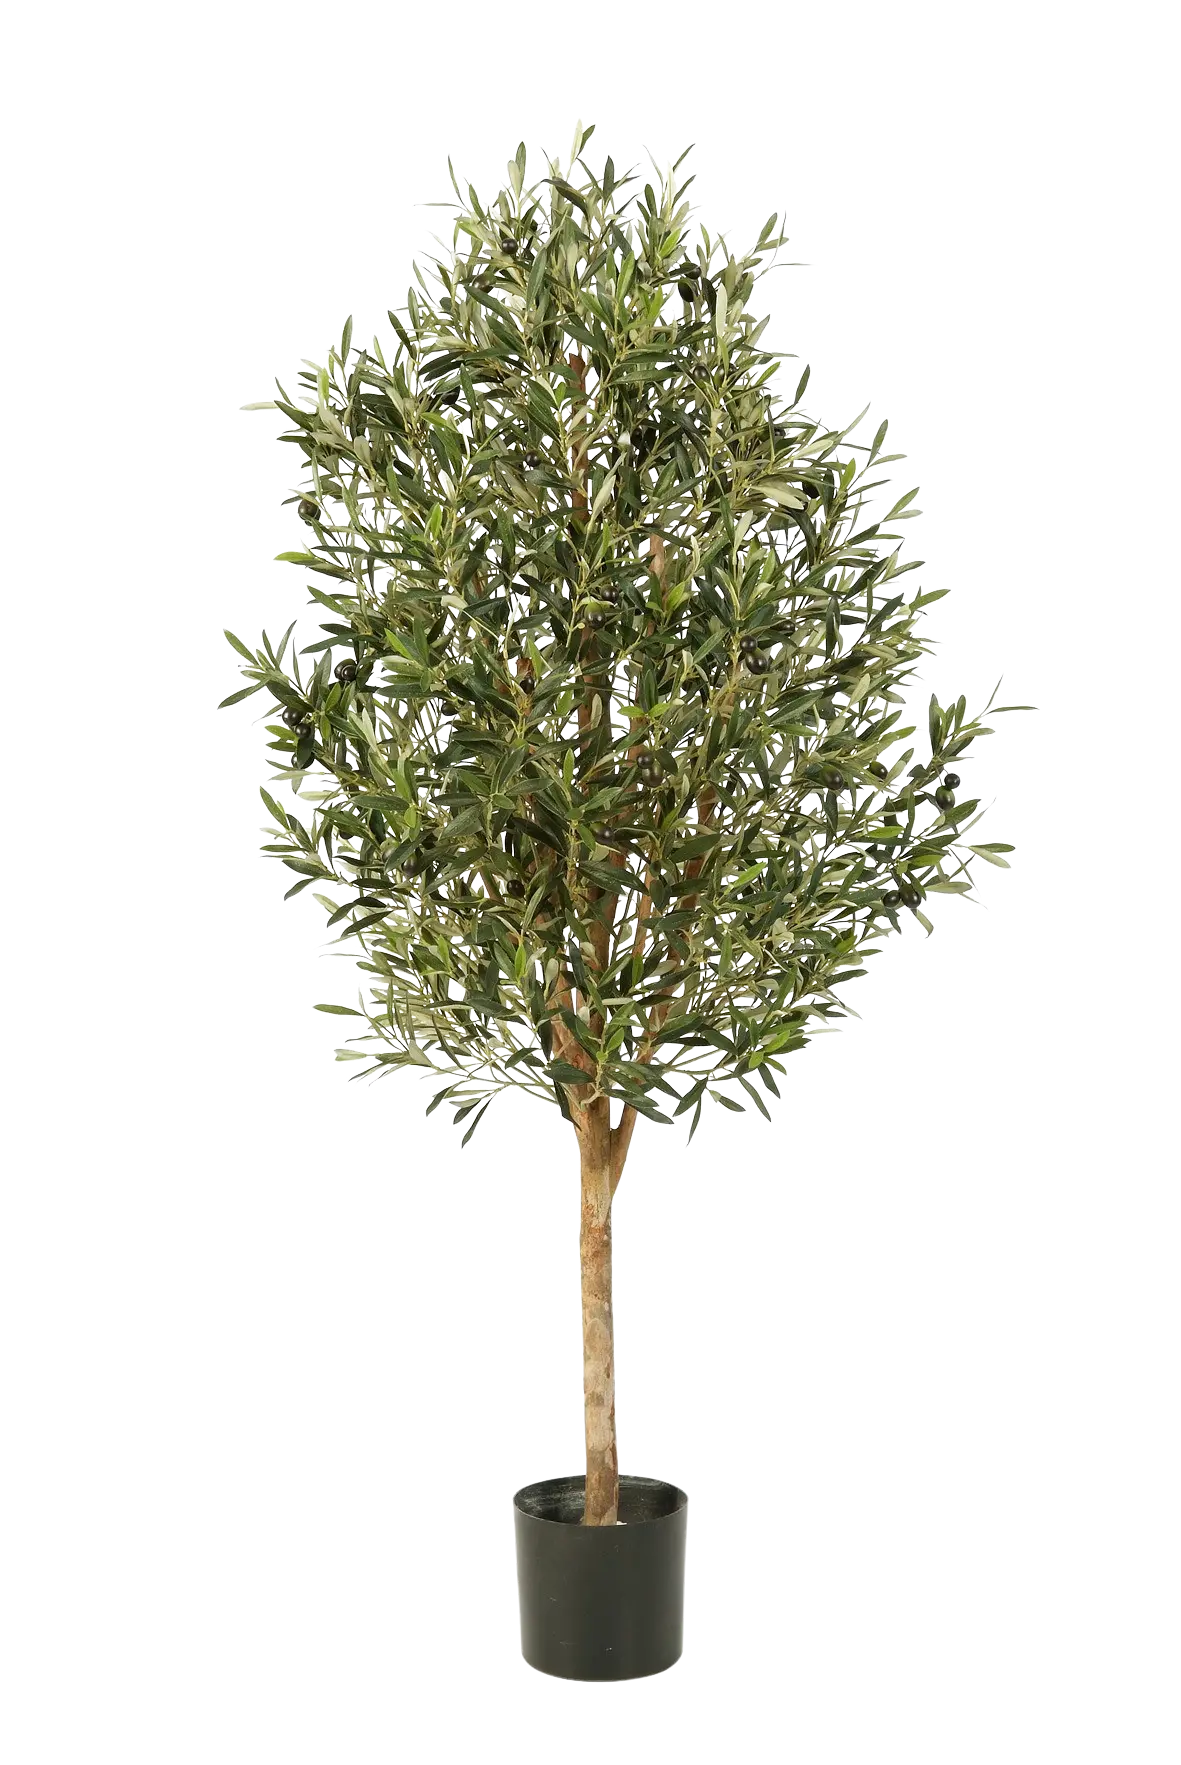 Hochwertiger Olivenbaum künstlich auf transparentem Hintergrund mit echt wirkenden Kunstblättern in natürlicher Anordnung. Künstlicher Olivenbaum - Ilaria hat die Farbe Natur und ist 170 cm hoch. | aplanta Kunstpflanzen